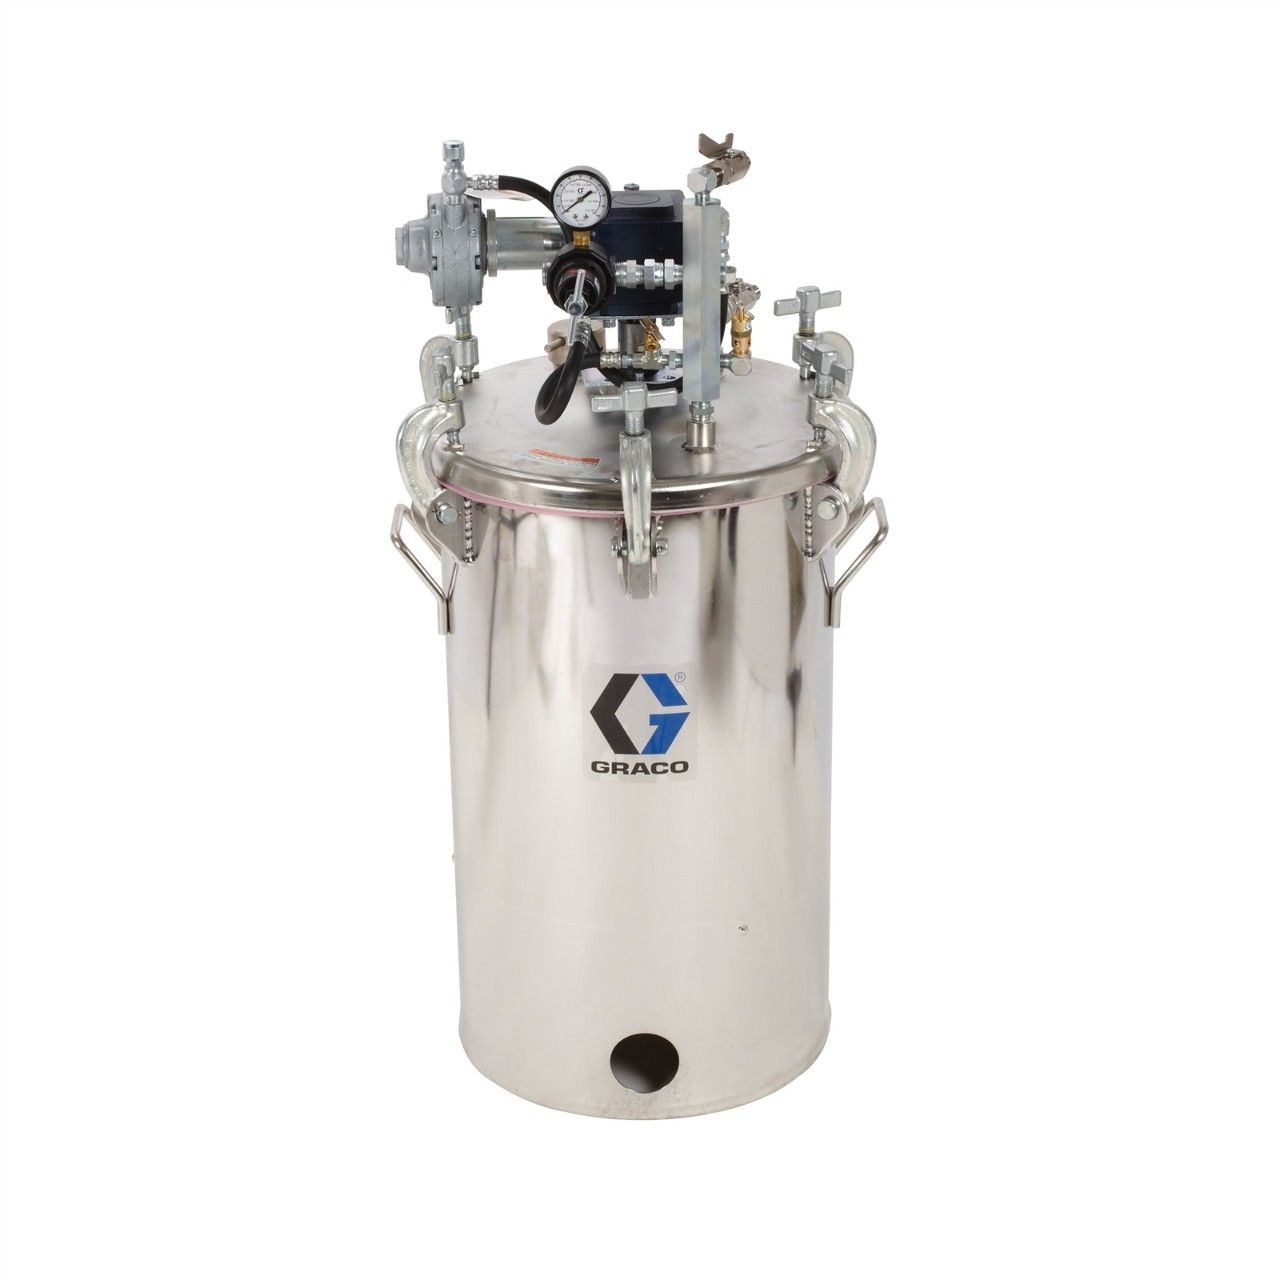 GRACO 10-Gallonen-Druckbehälter (HVLP), Behälter mit Rührwerk - 236153